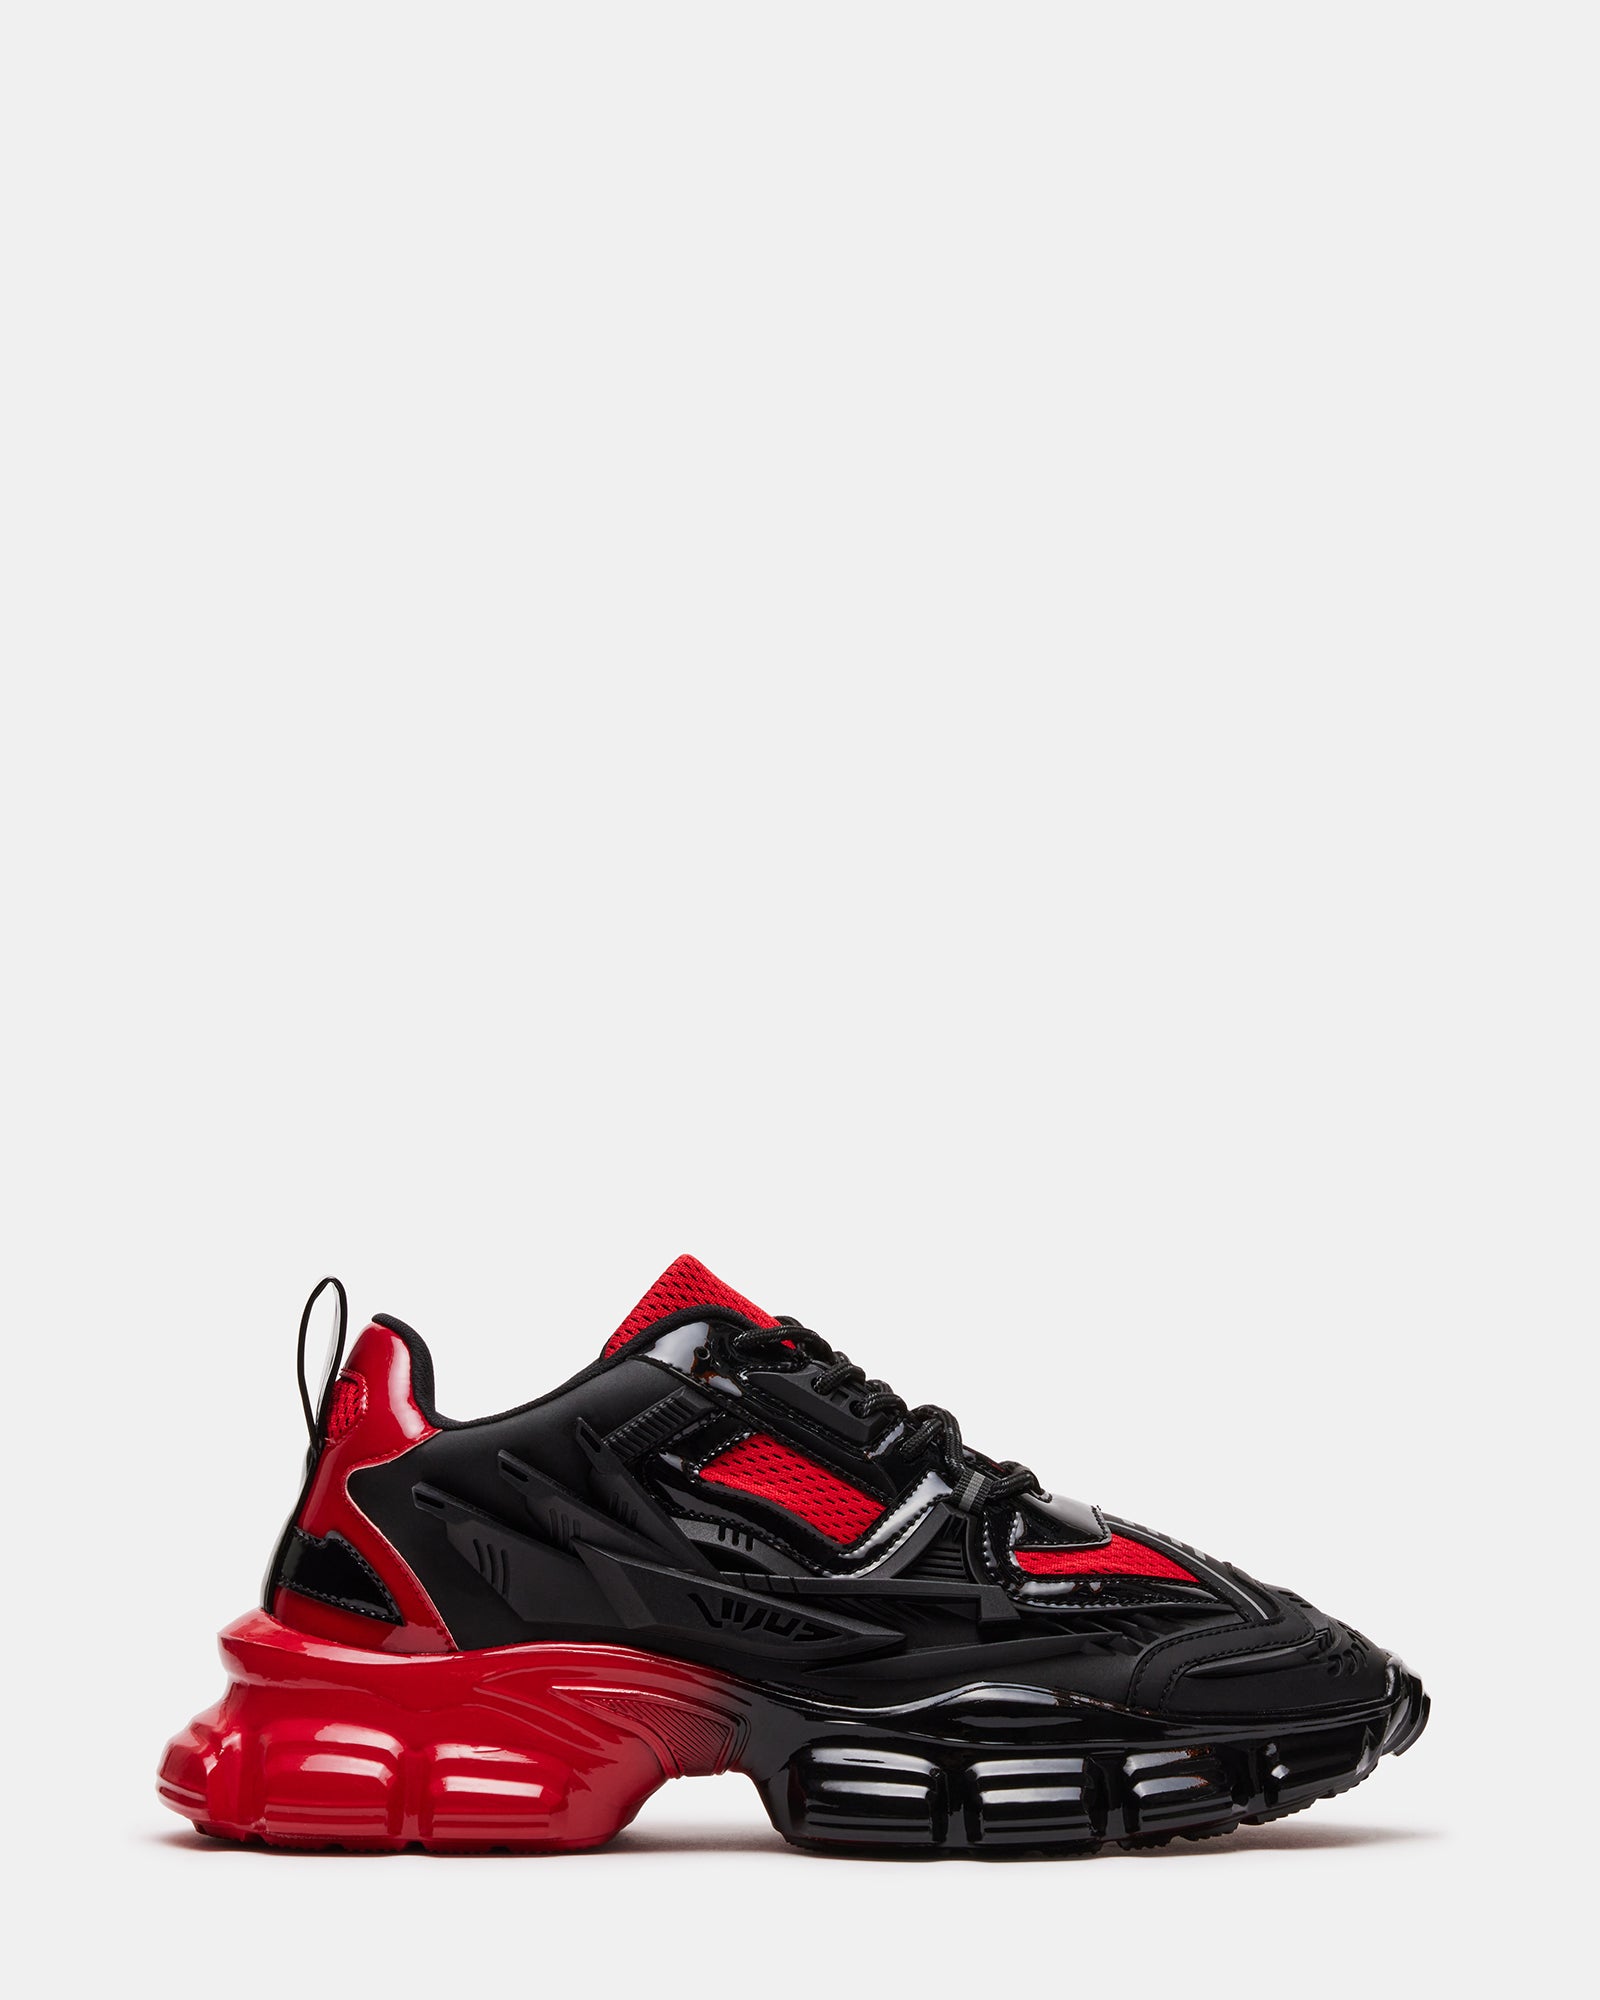 size 13 Steve Madden Chris White/Red casual sneakers CHRI02M1 Medium width  New | eBay